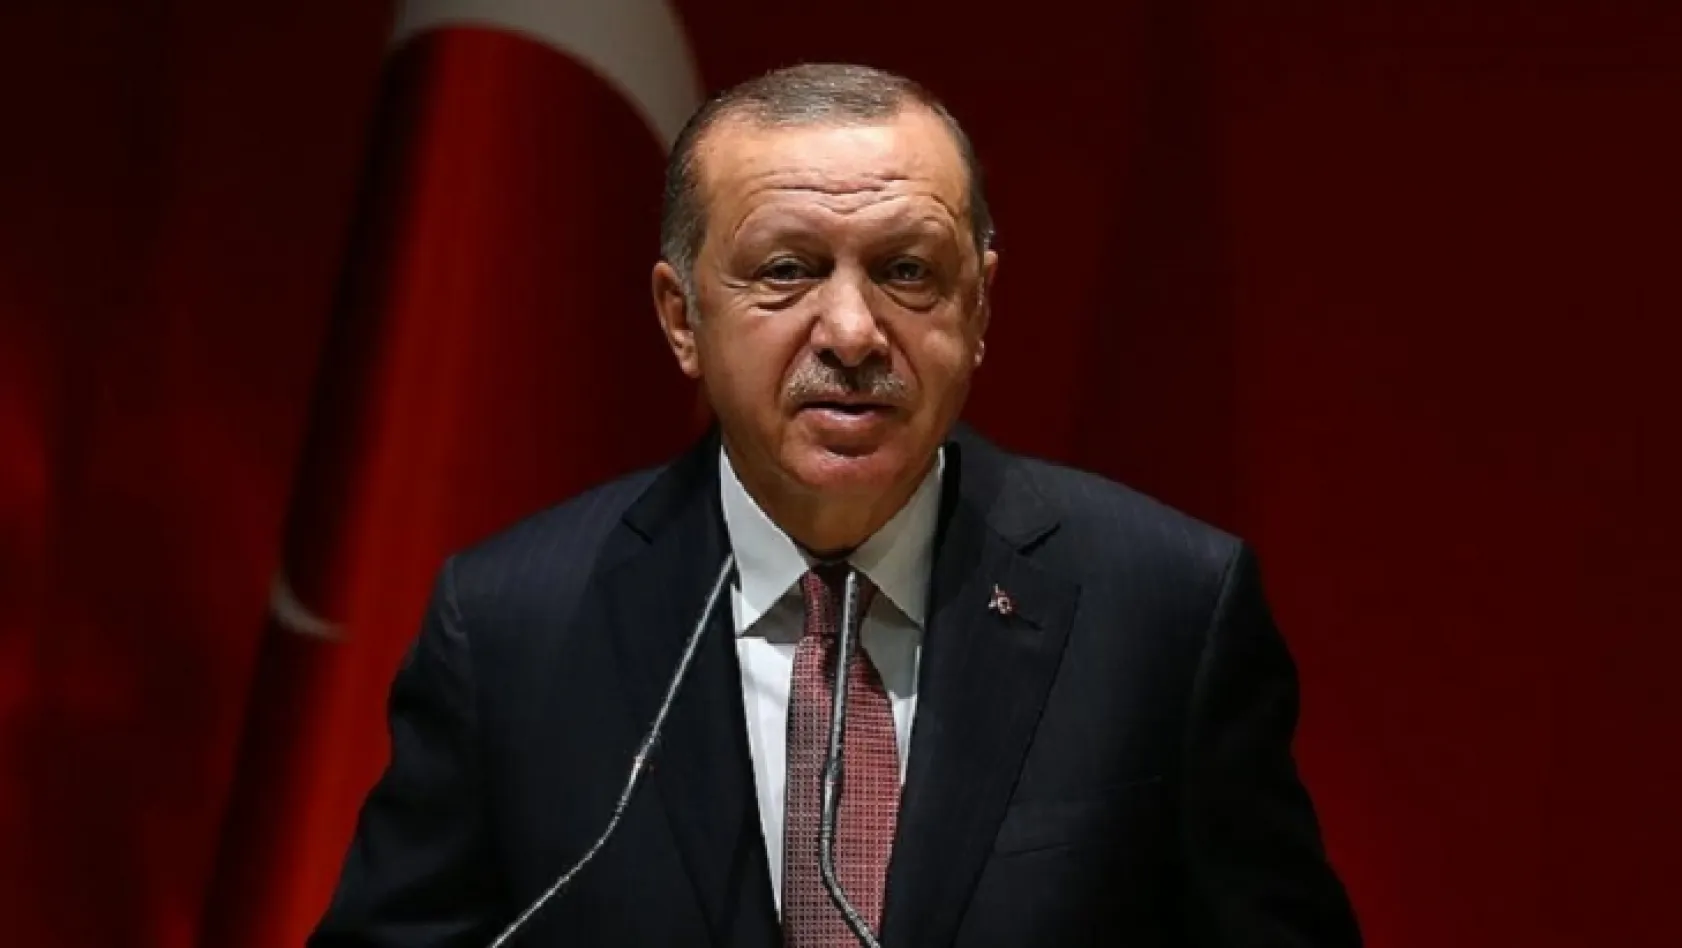 Cumhurbaşkanı Erdoğan 14 başkan adayını daha açıkladı!